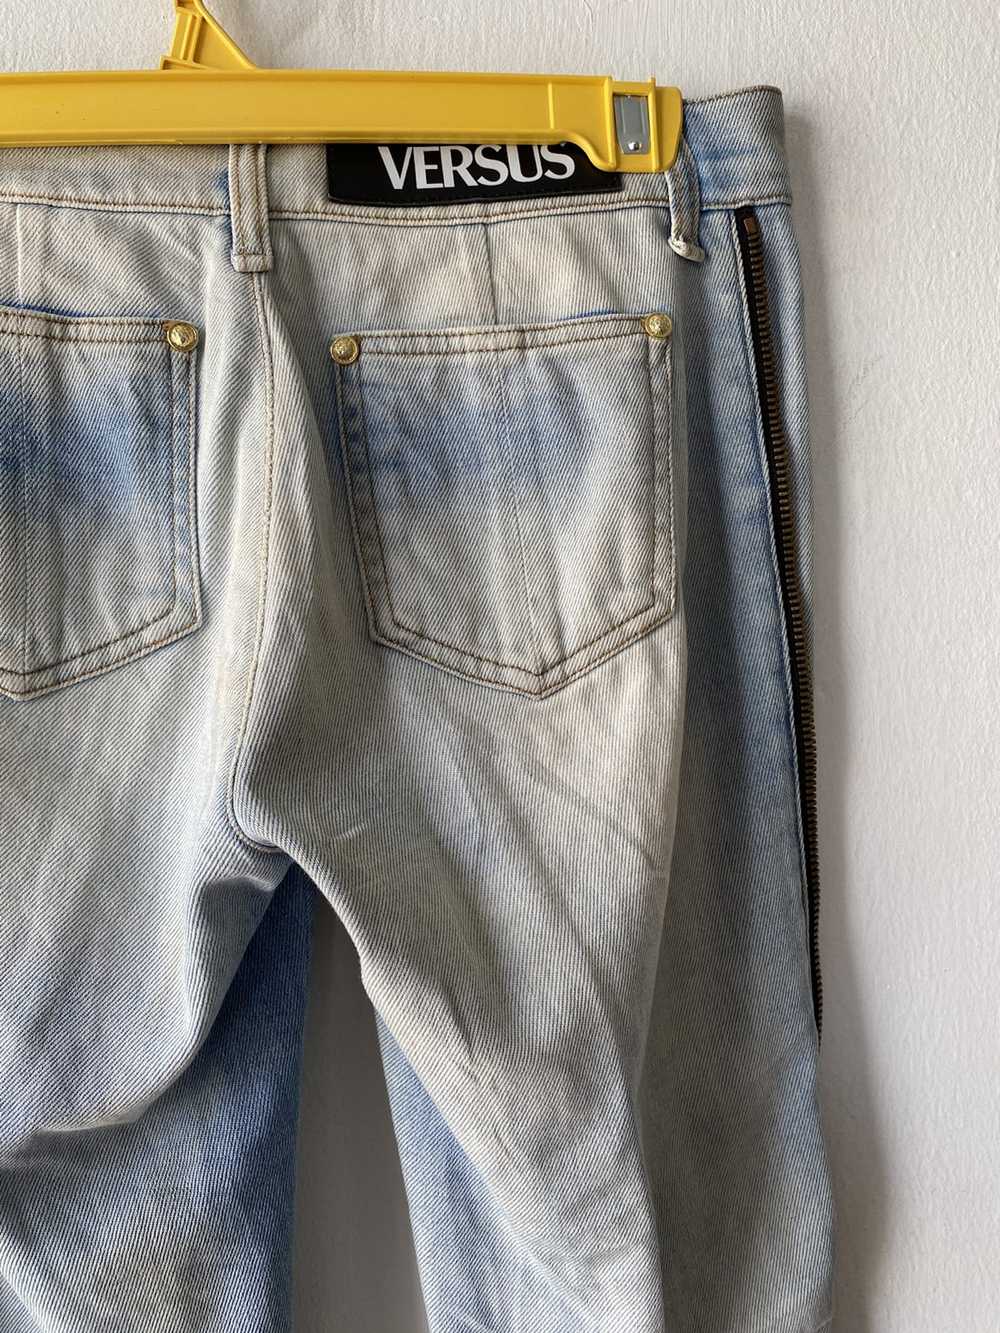 Versace × Versus Versace SS14 Versus Versace Jeans - image 10